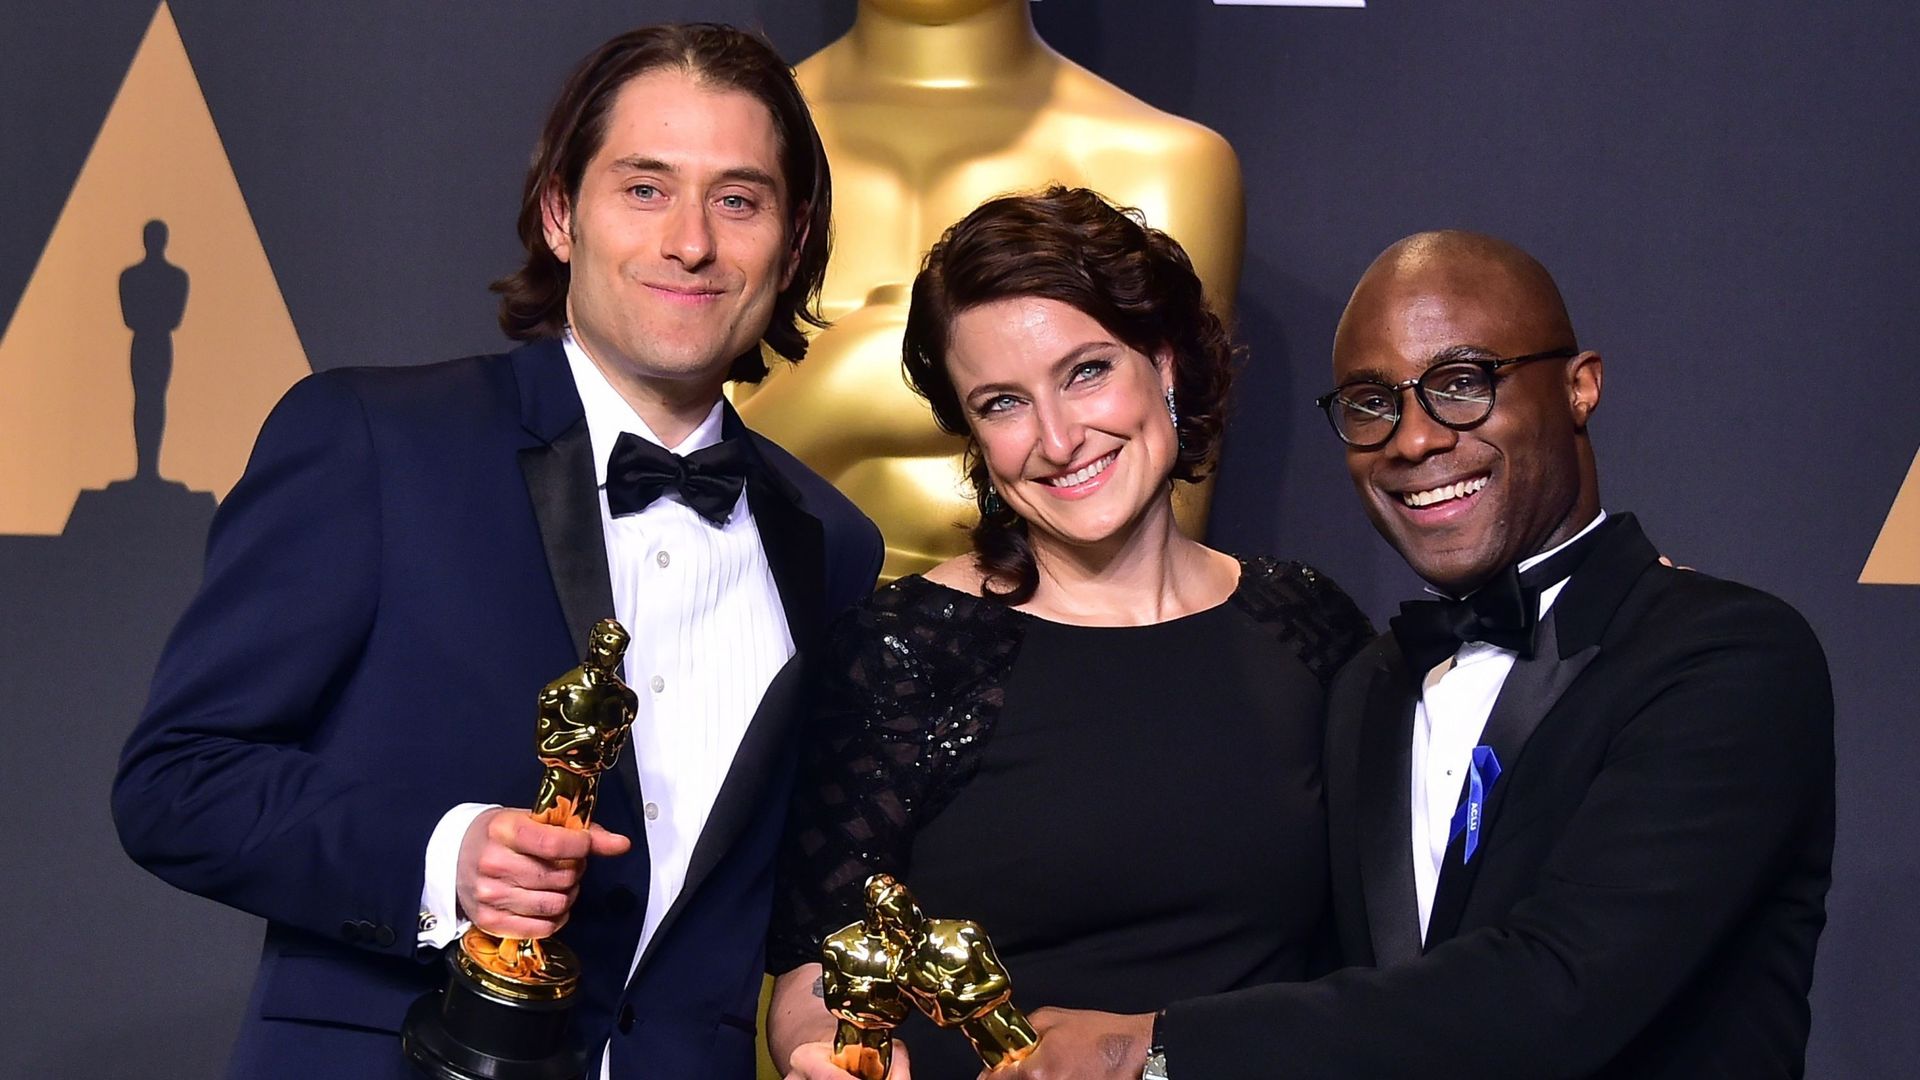 Oscars 2017: "Moonlight" sacré meilleur film, après l'annonce erronée de "La La Land" vainqueur